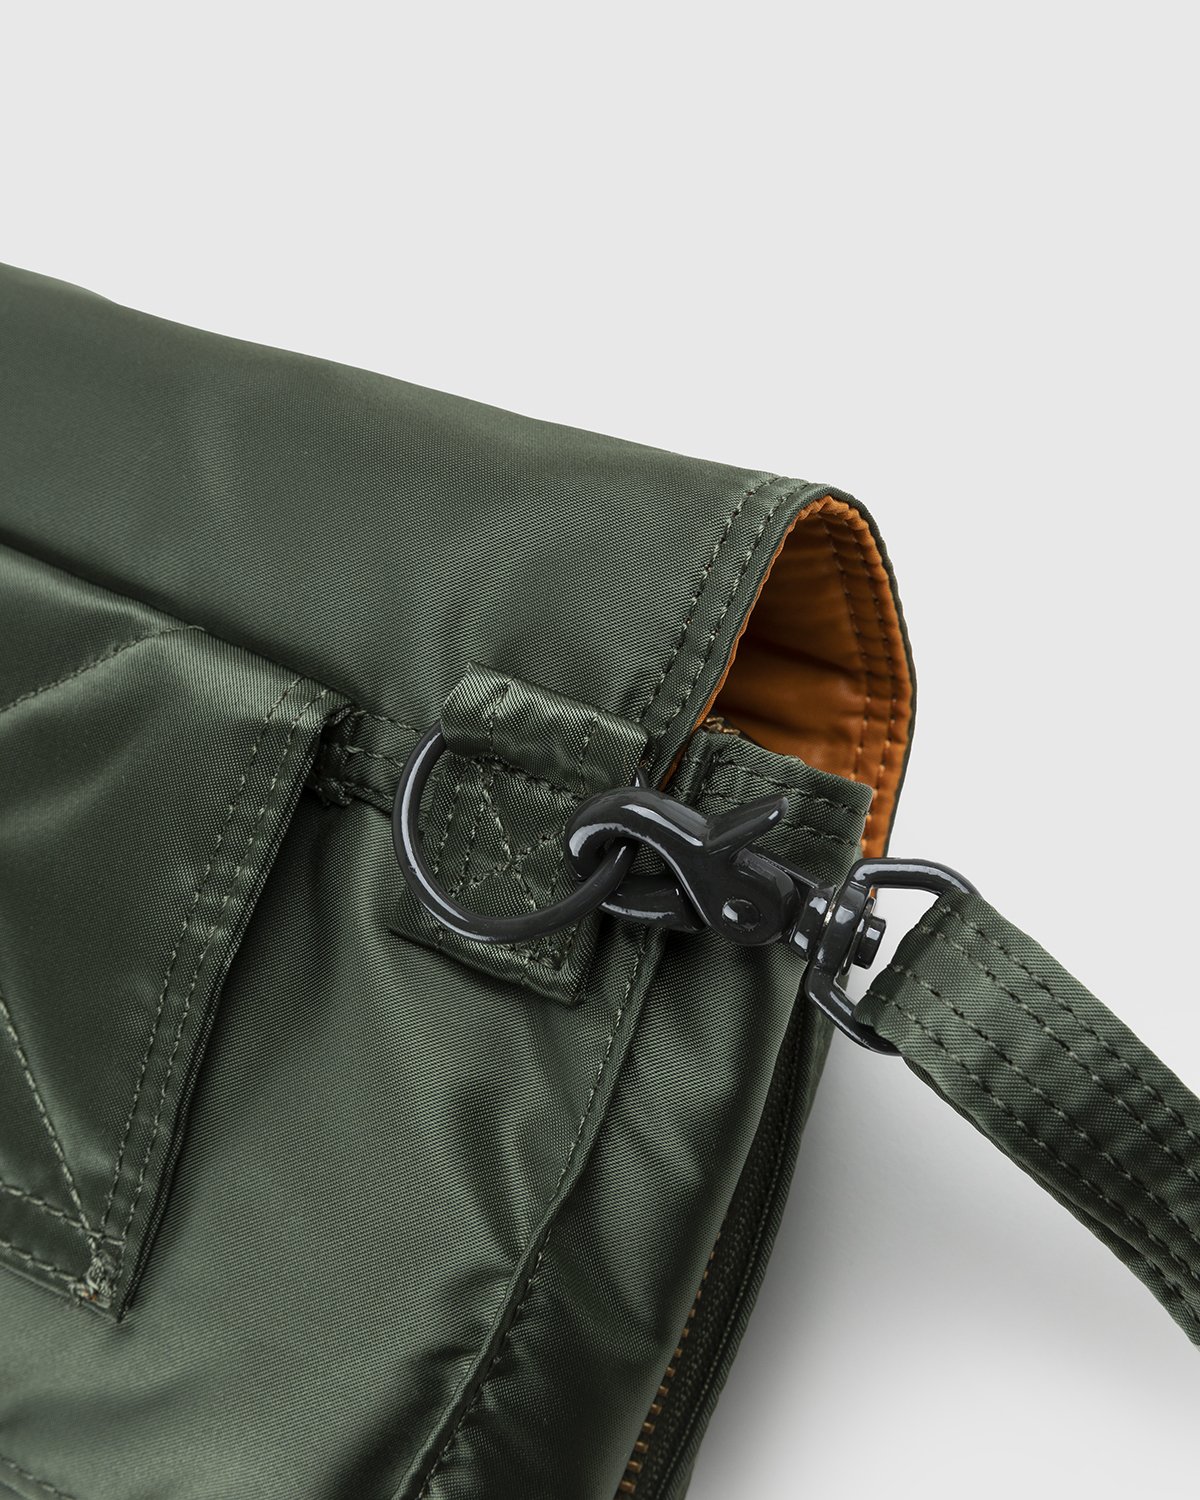 Porter-Yoshida & Co. - Tanker Clip Shoulder Bag Sage Green - Accessories - Green - Image 3